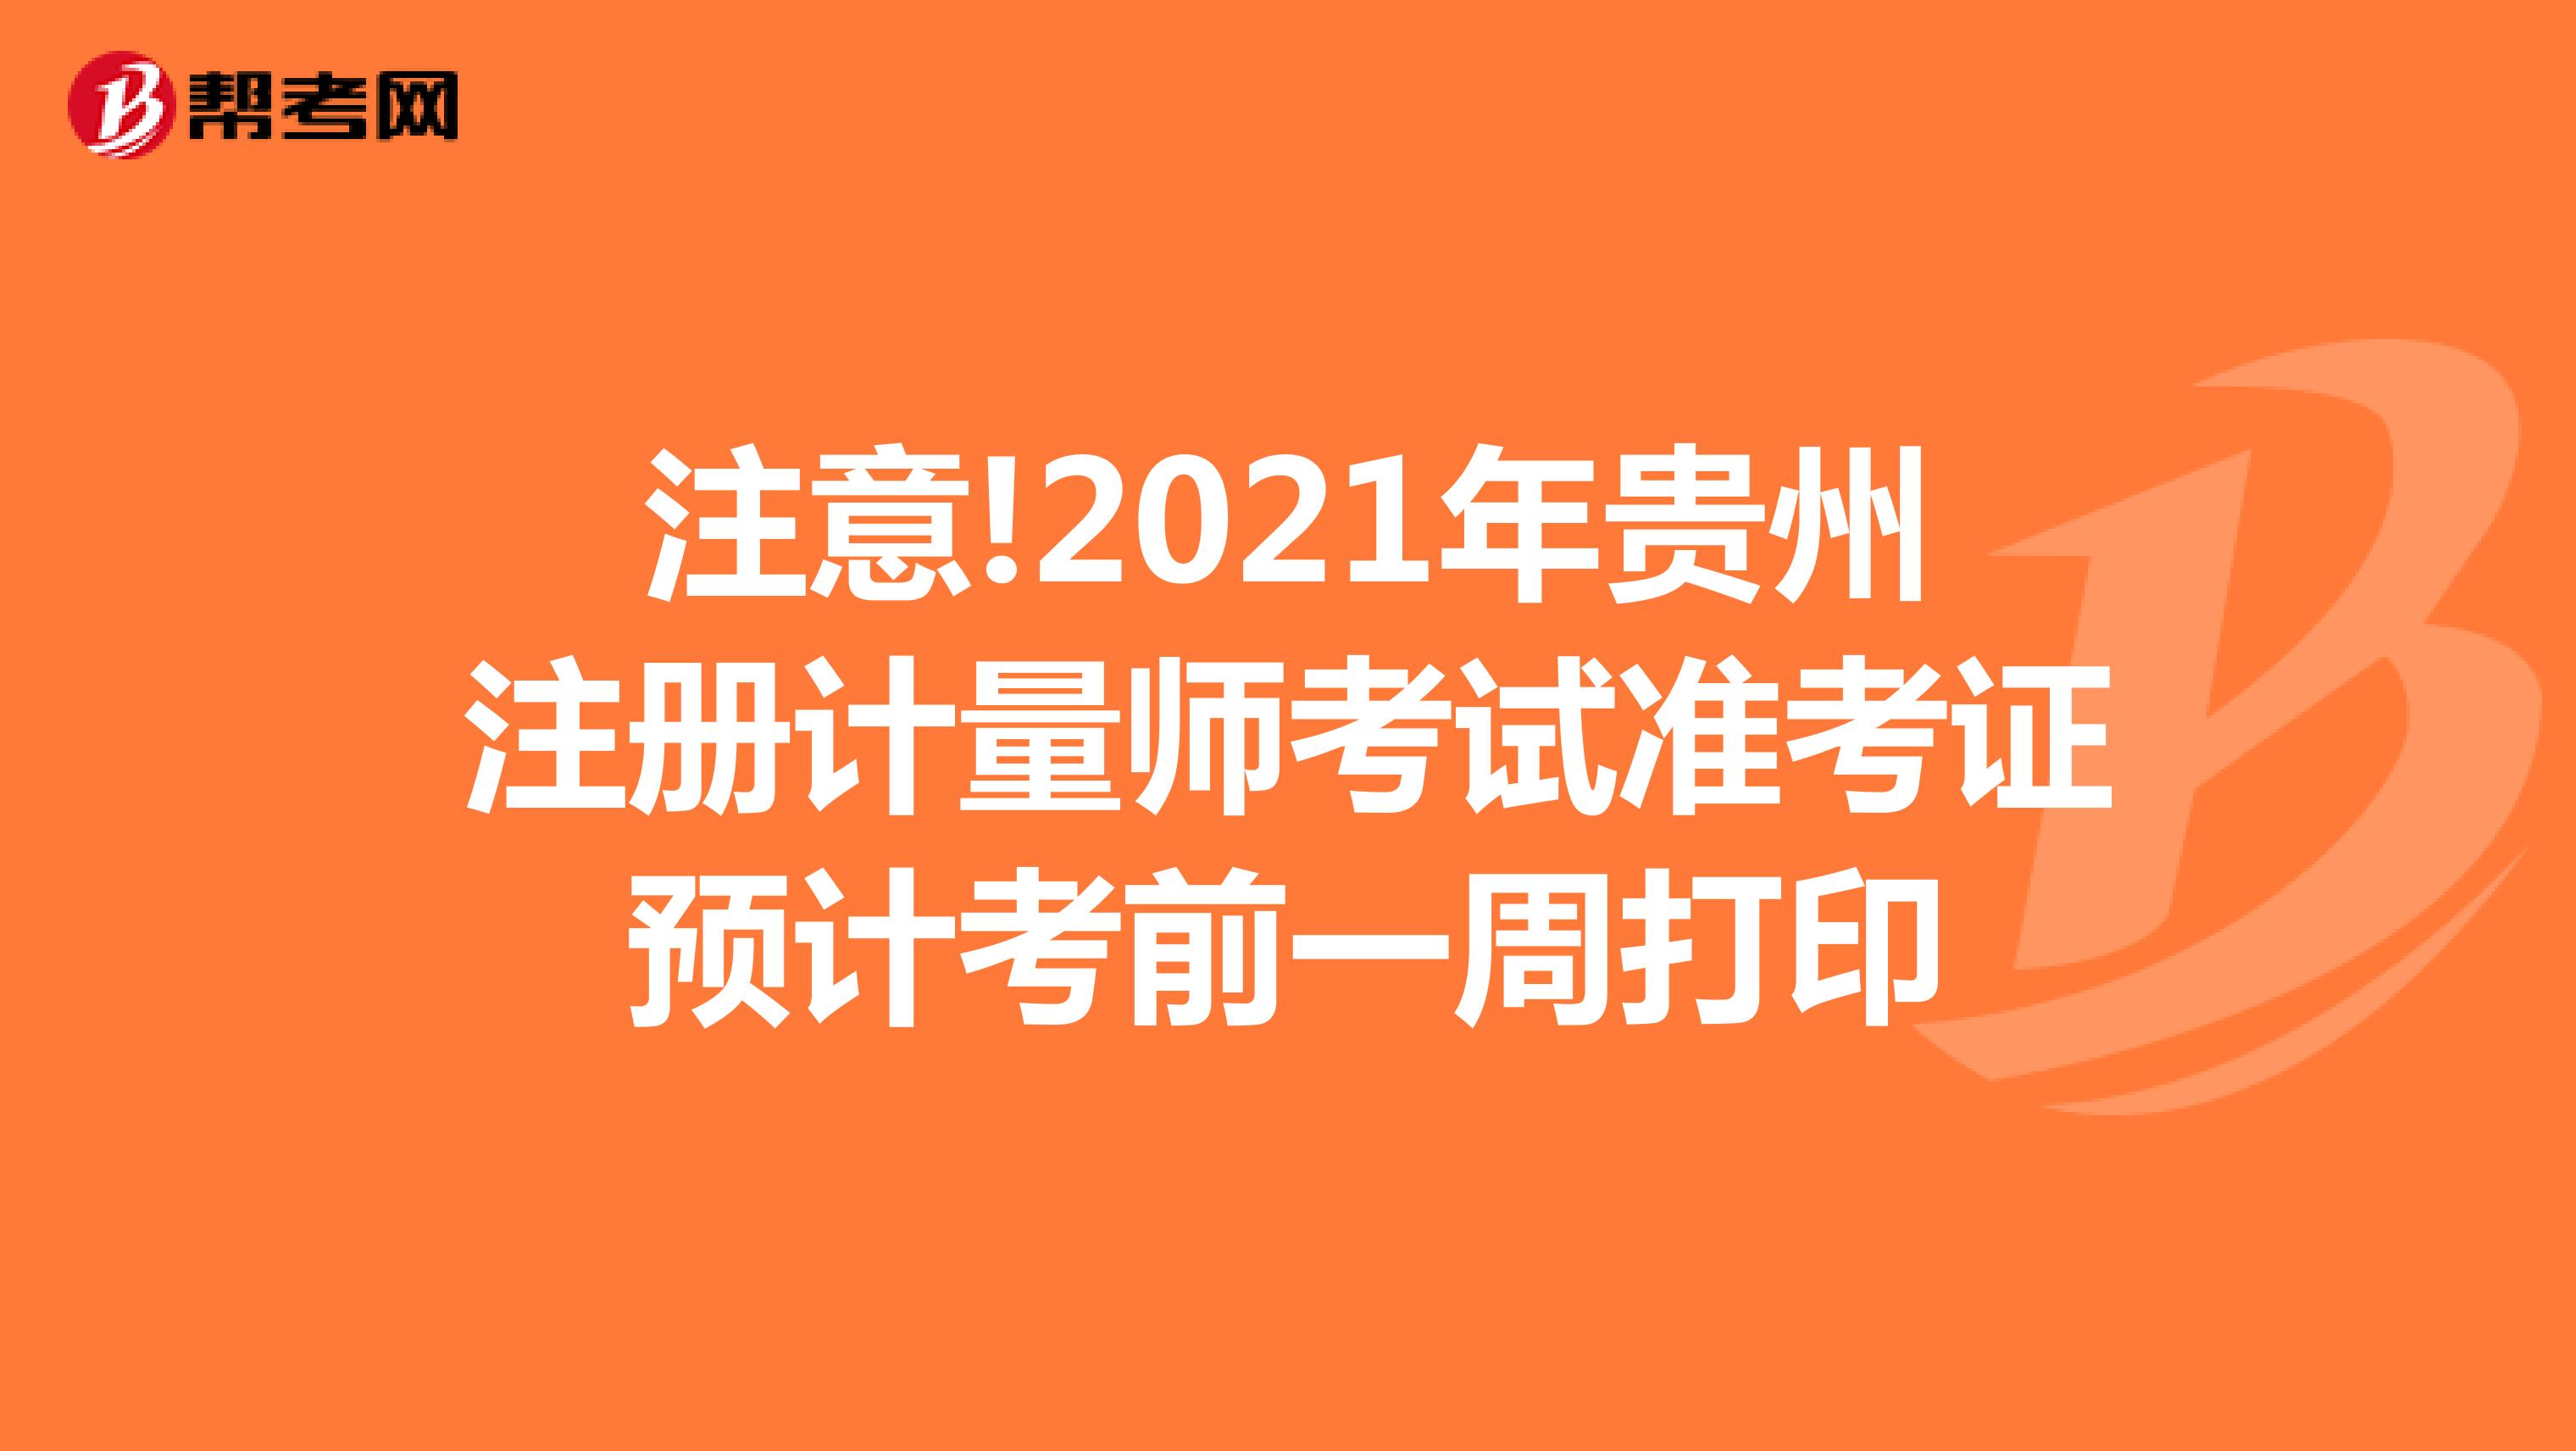 注意!2021年贵州注册计量师考试准考证预计考前一周打印